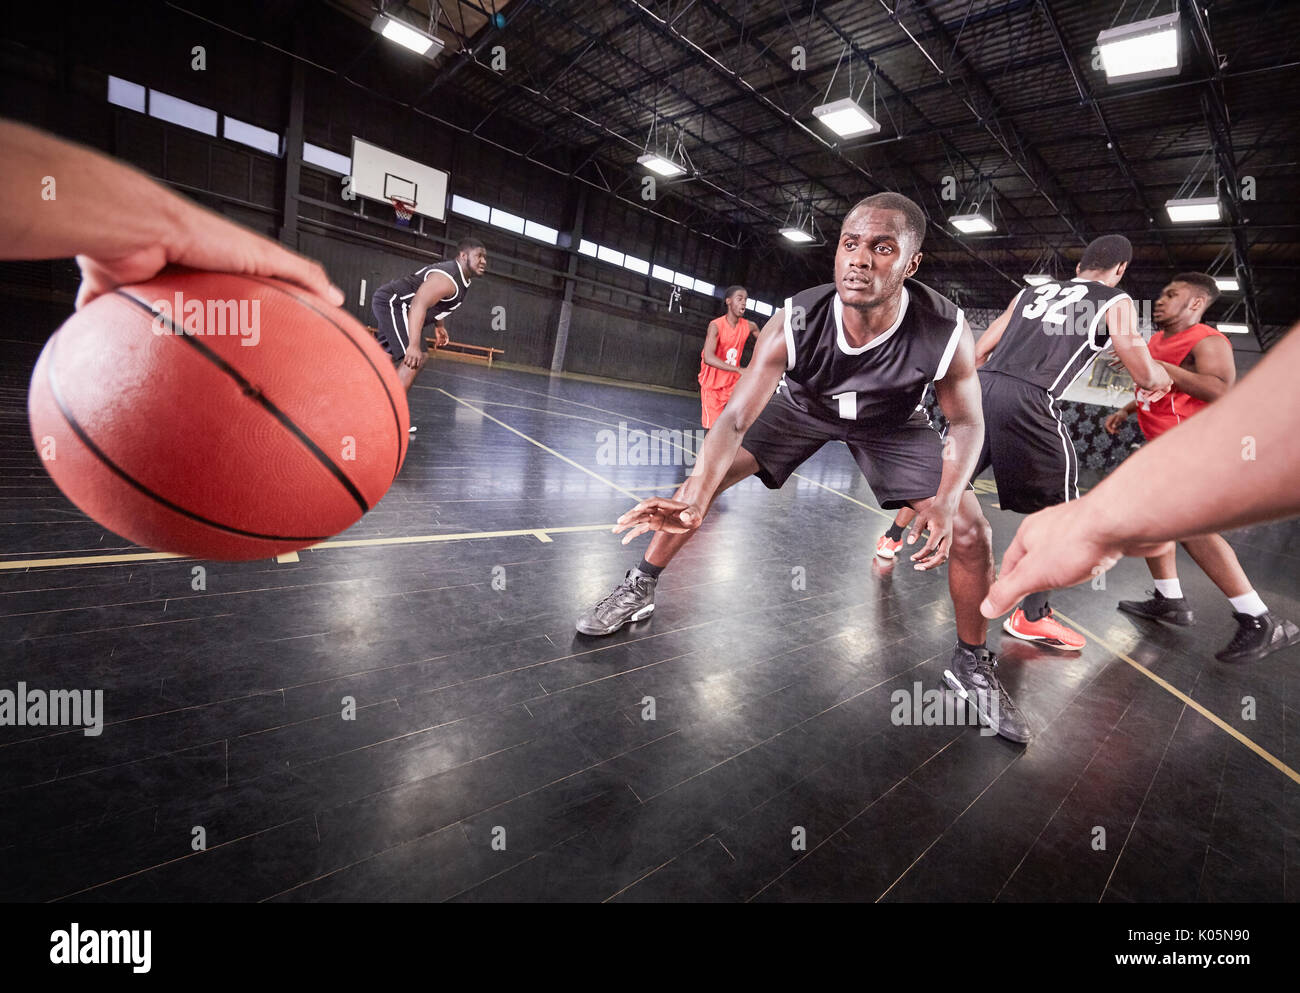 Junge männliche Basketball Spieler spielen Spiel auf Gericht im Gymnasium Stockfoto